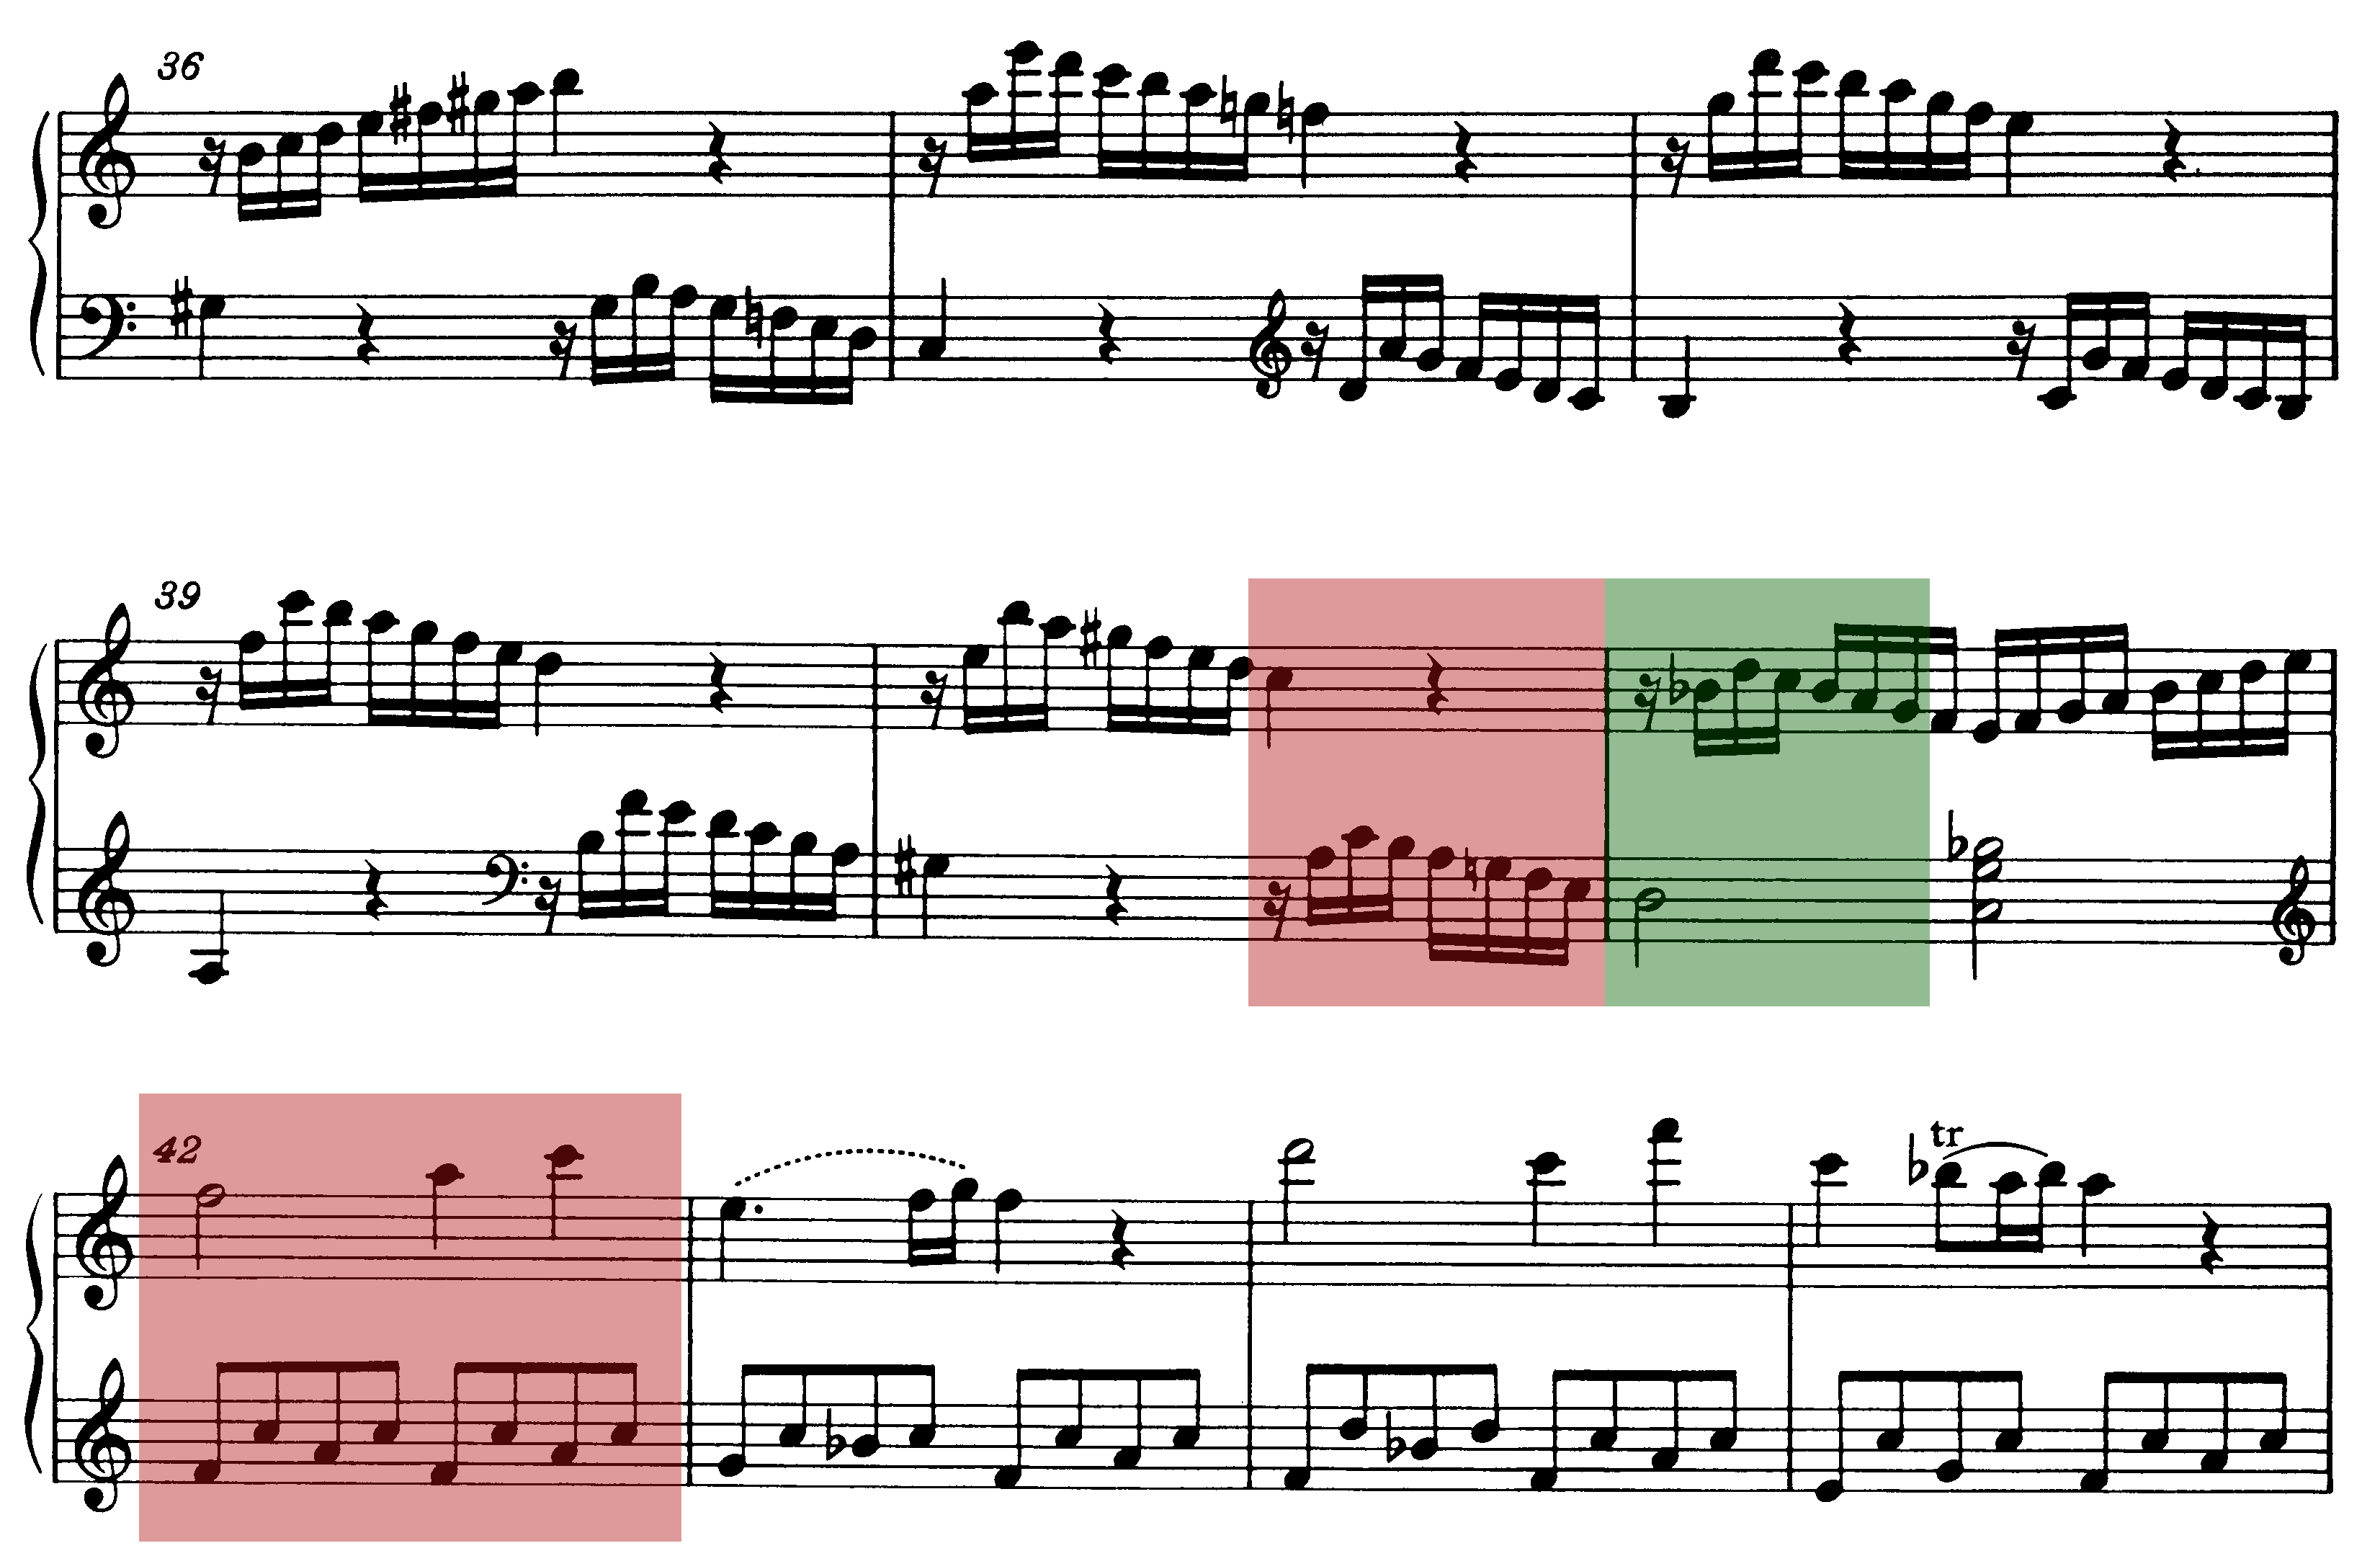 Neapolitaner beim Übergang zur Reprise in der Sonate C-Dur KV 545 (Mozart) mit Farbe